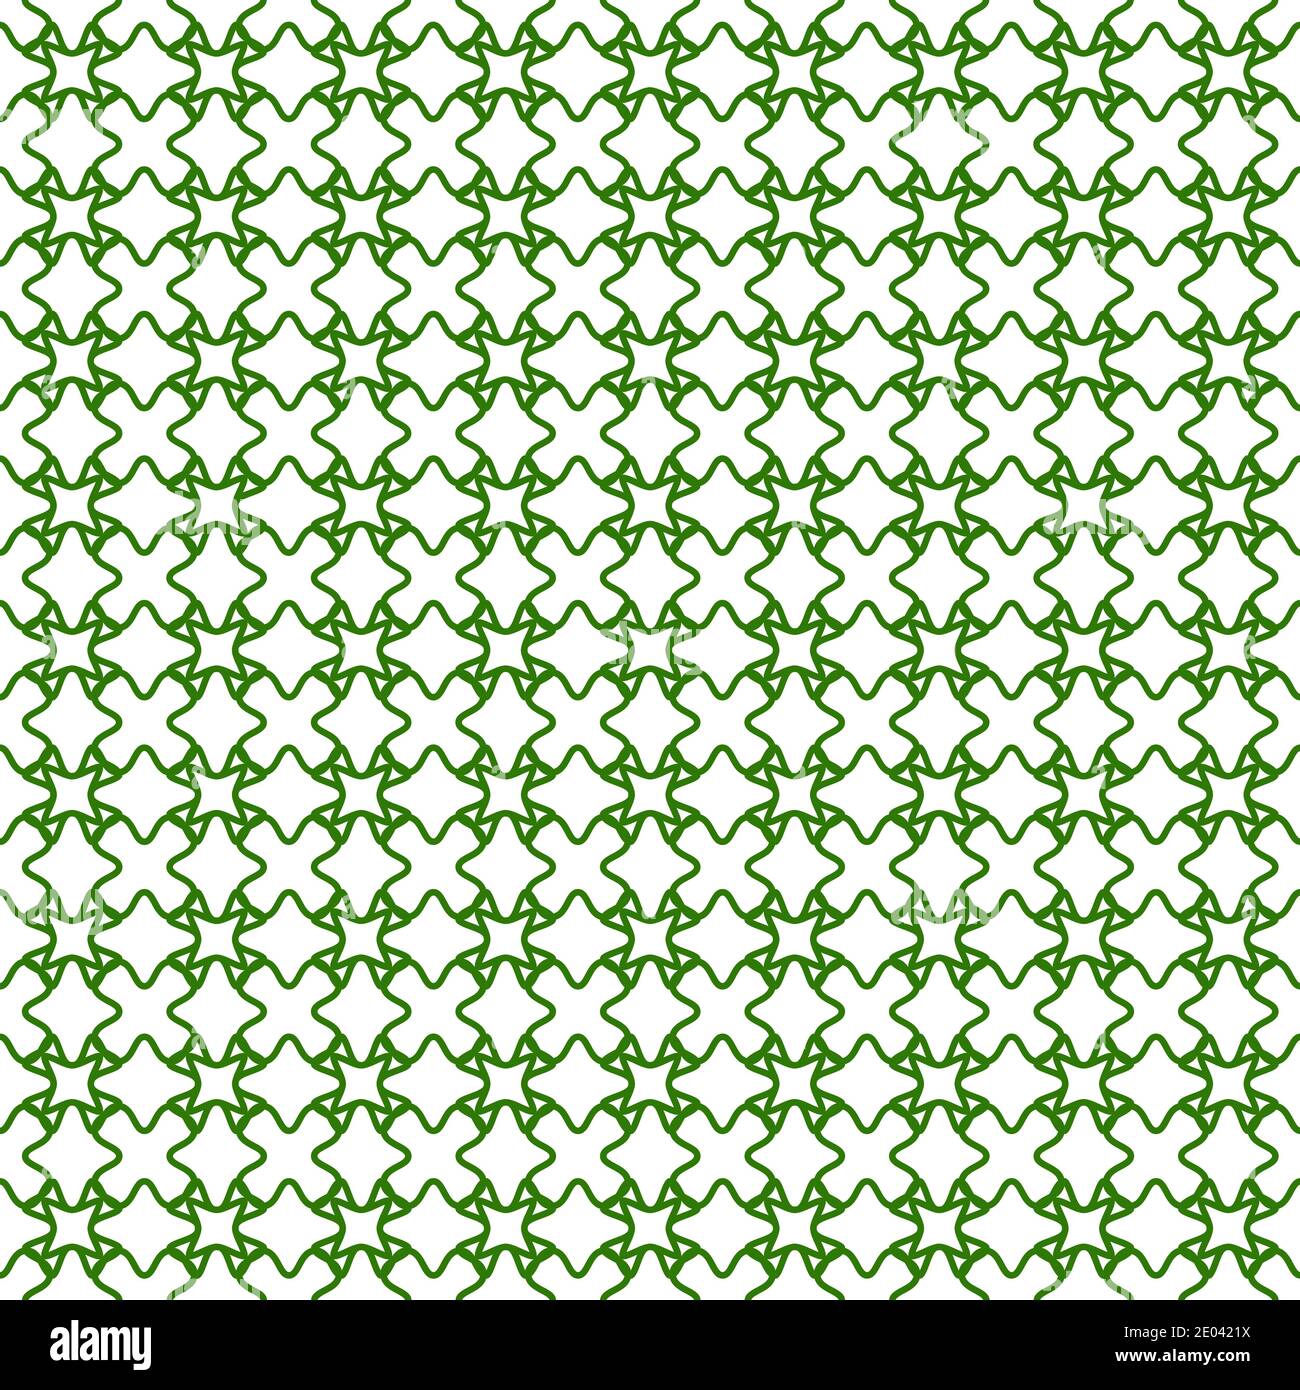 grid di sicurezza vettoriale per documenti di valore, sfondo verde chiaro e trasparente, pattern grid arabescato Illustrazione Vettoriale